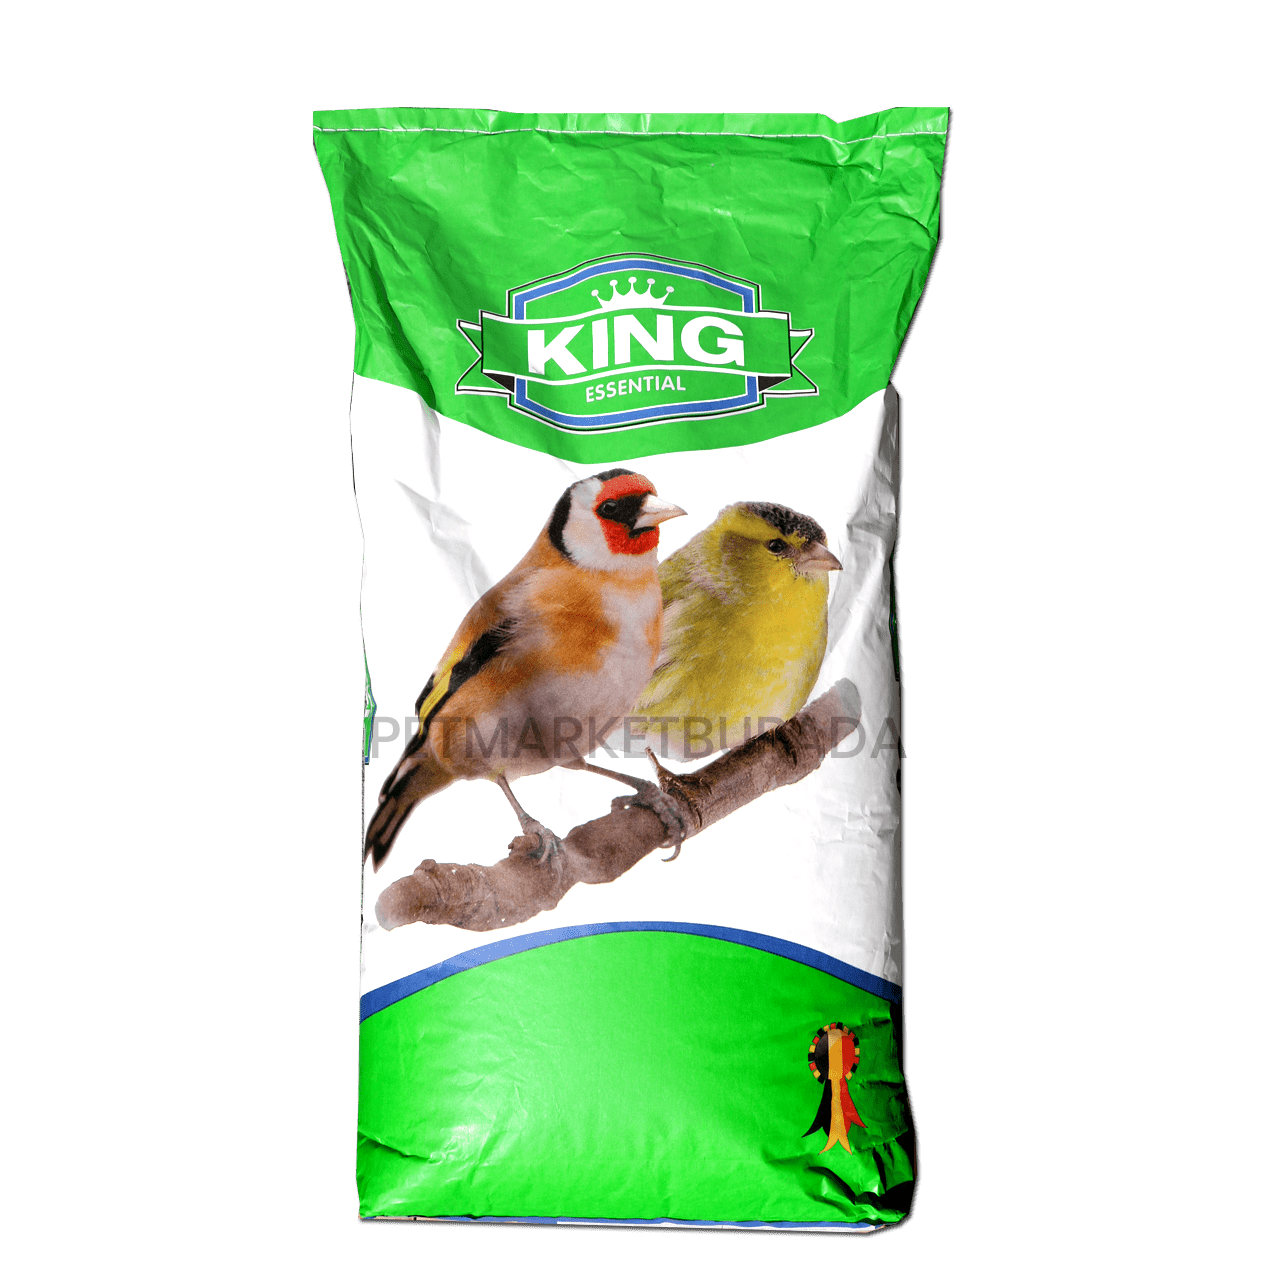 Natural King European Finch Karışık Saka Ve Doğa Kuşu Yemi 5 kg (Bölünmüş)